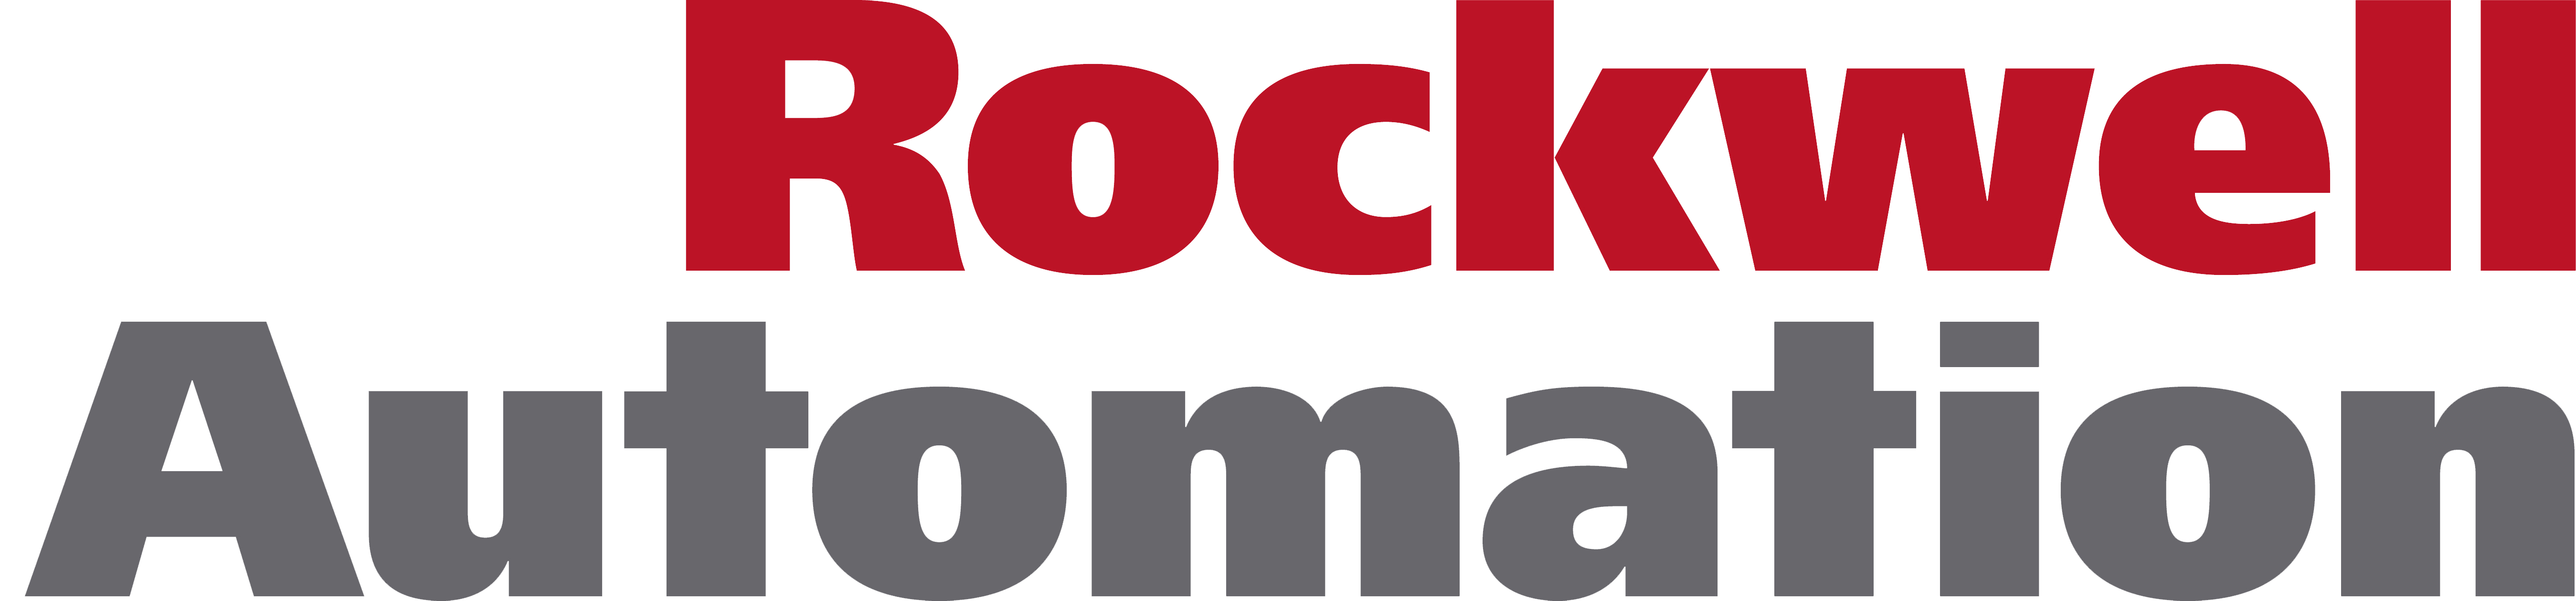 Rockwell Automation Logo - Rockwell automation Logos